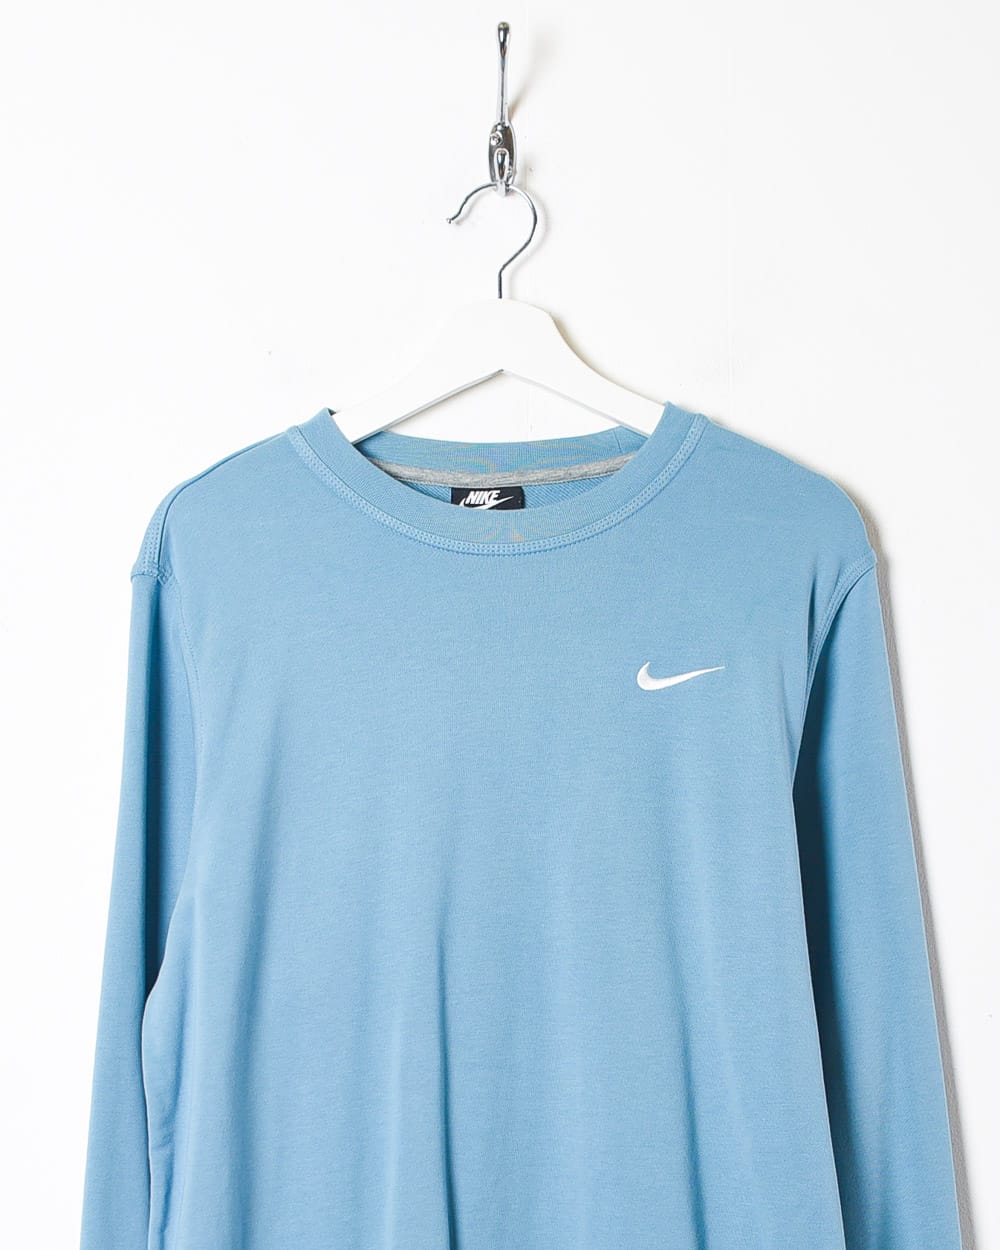 Baby Nike Sweatshirt - Small